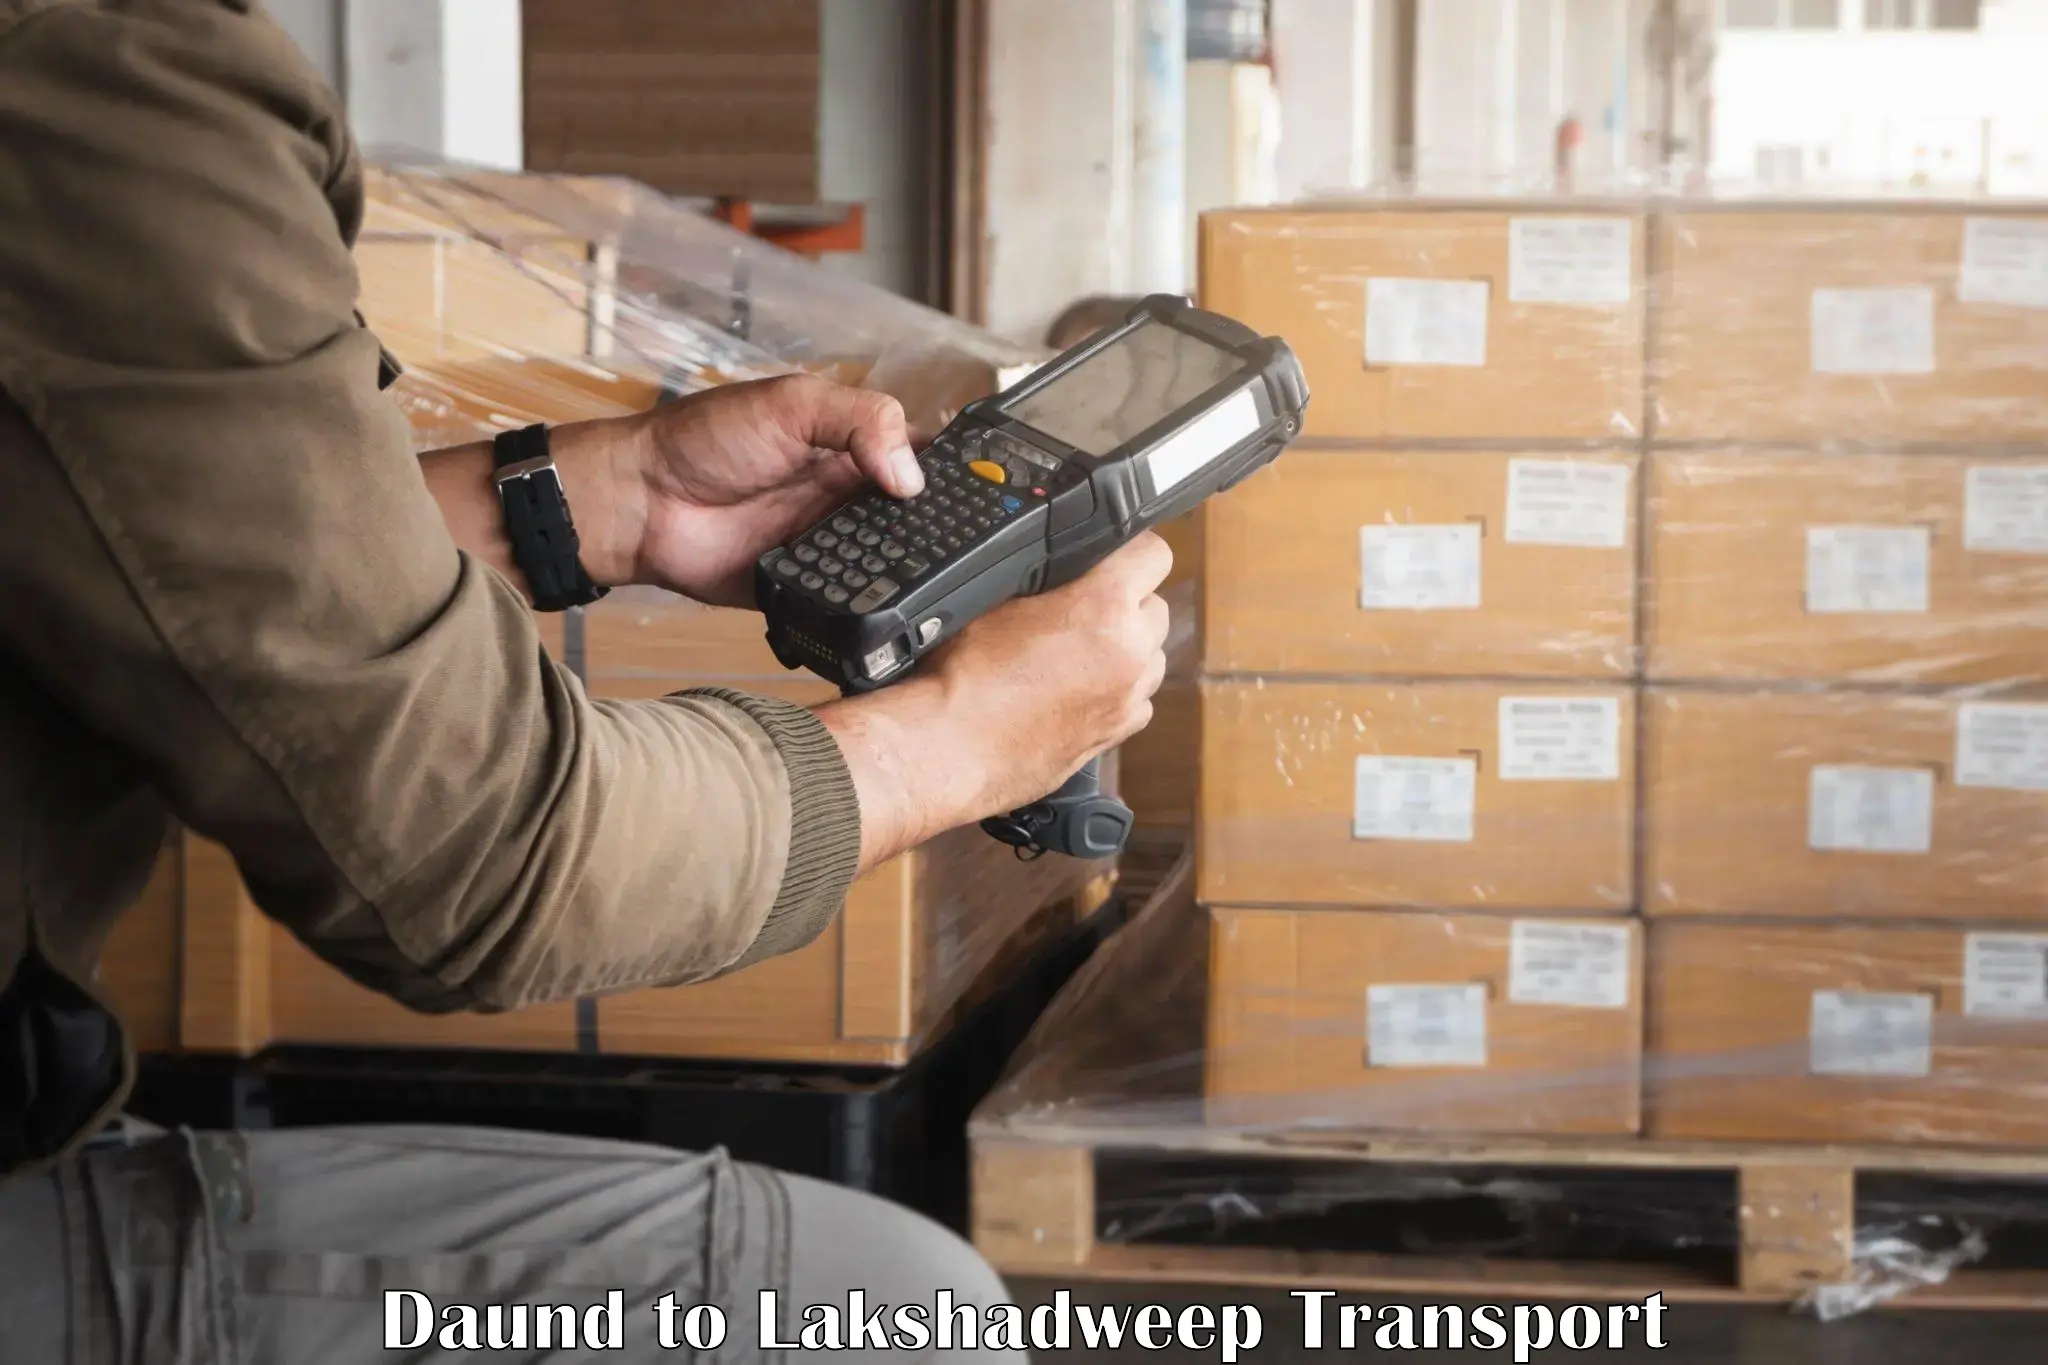 Lorry transport service Daund to Lakshadweep